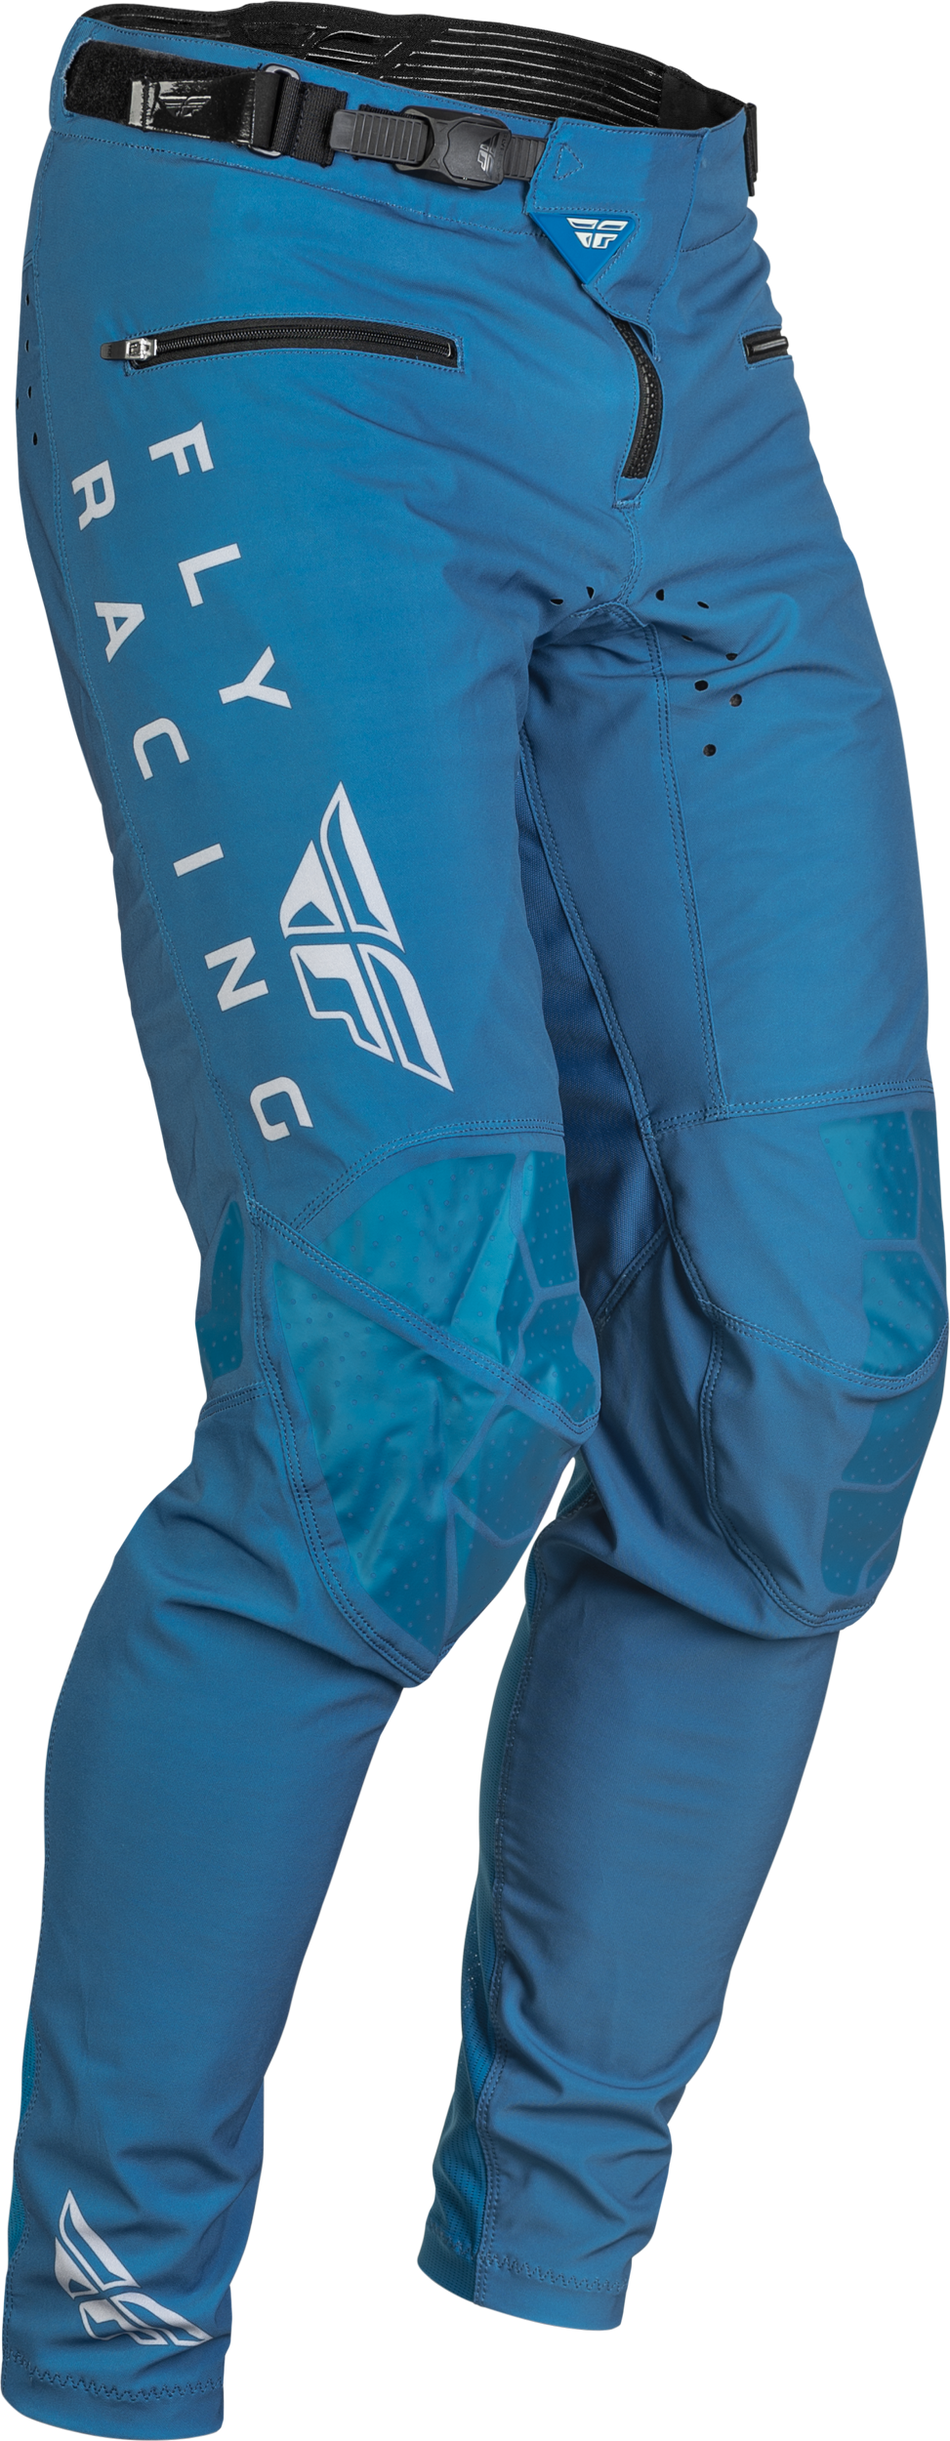 FLY RACING Radium Bicycle Pants Slate Blue/Grey Sz 34 376-04434